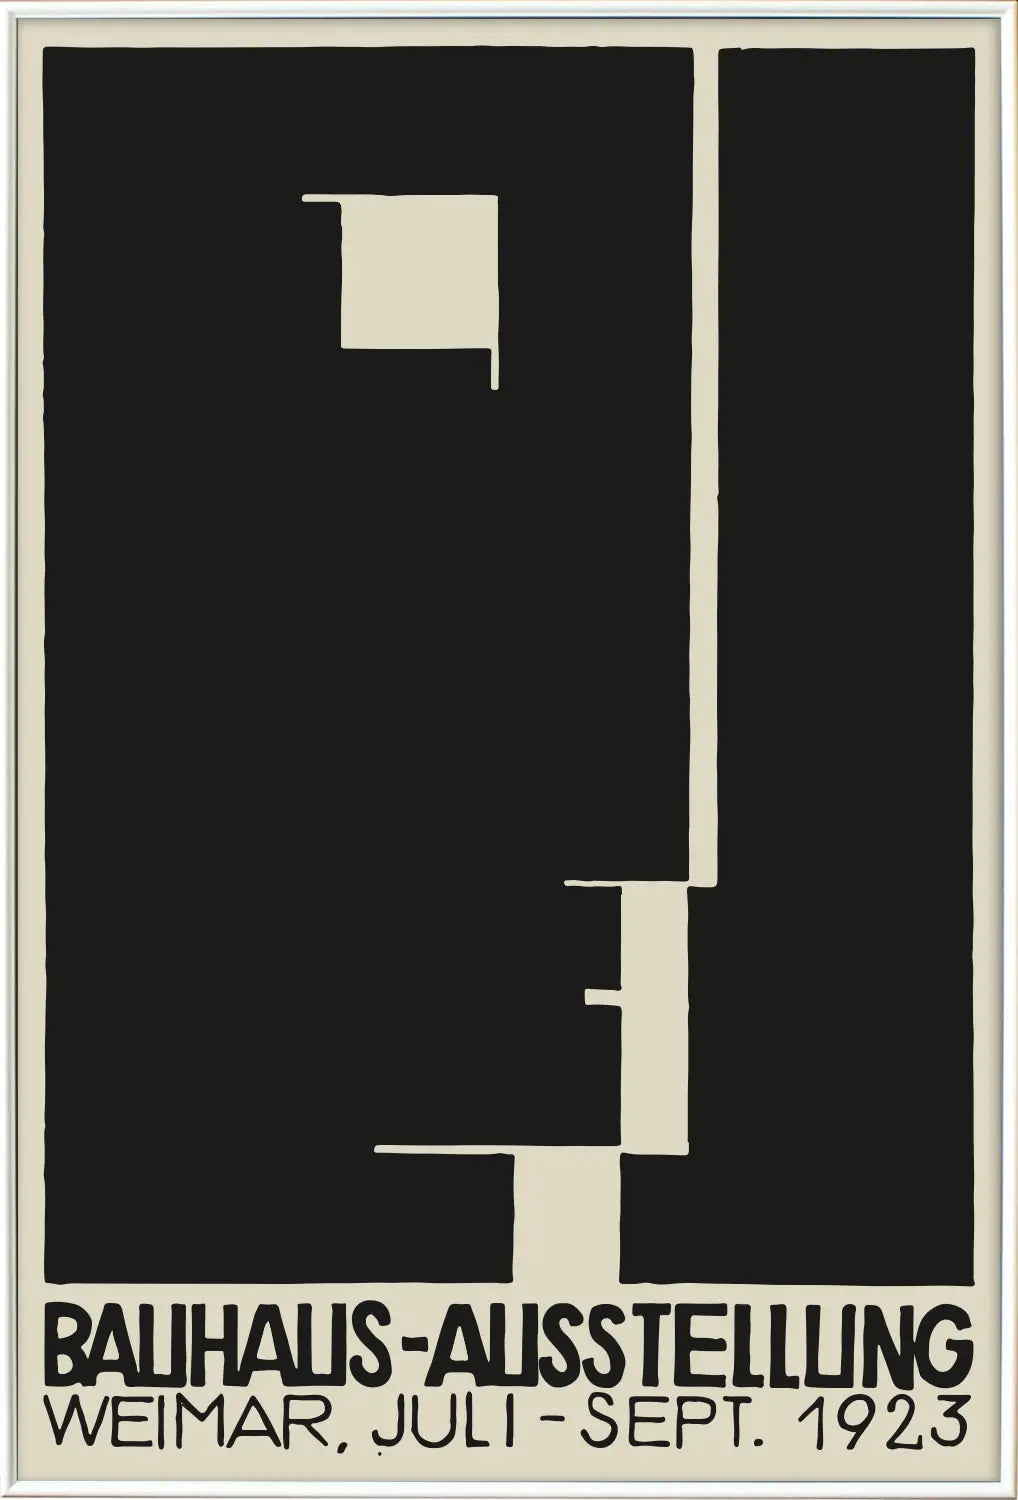 Bauhaus-Ausstellung Weimar 1923 – Official Bauhaus Japan